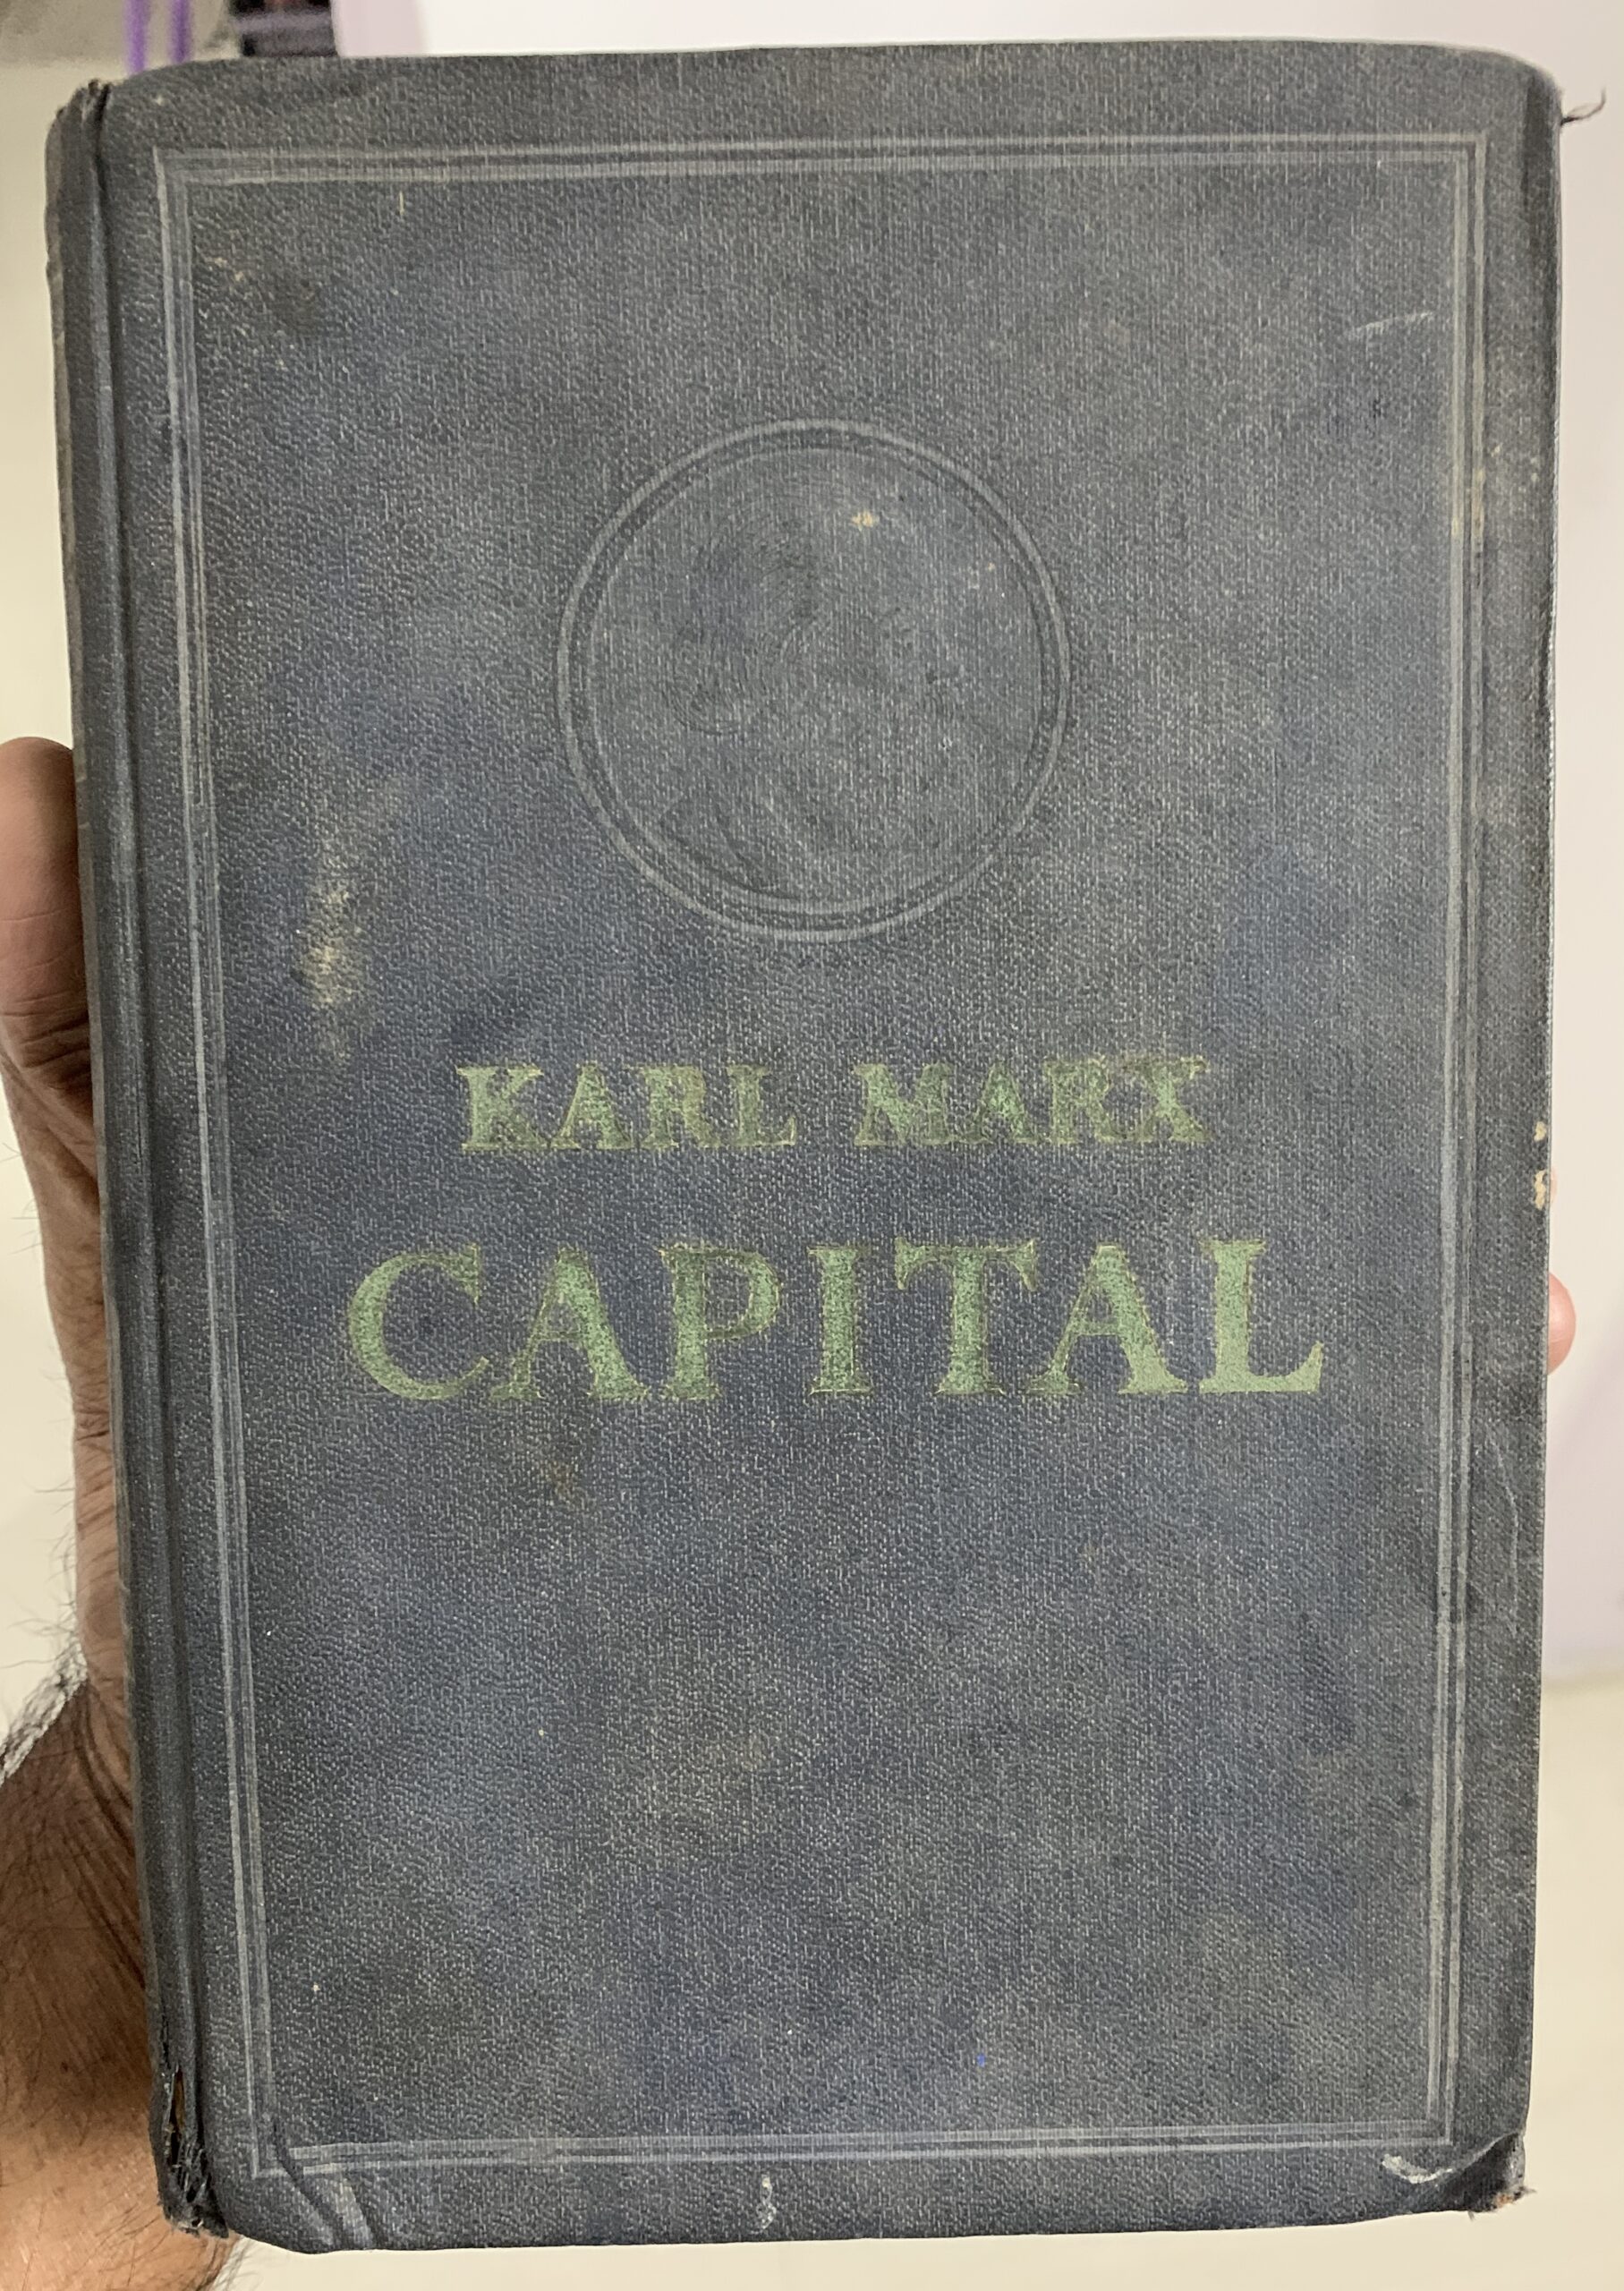 Capital Volume II By Karl Marx